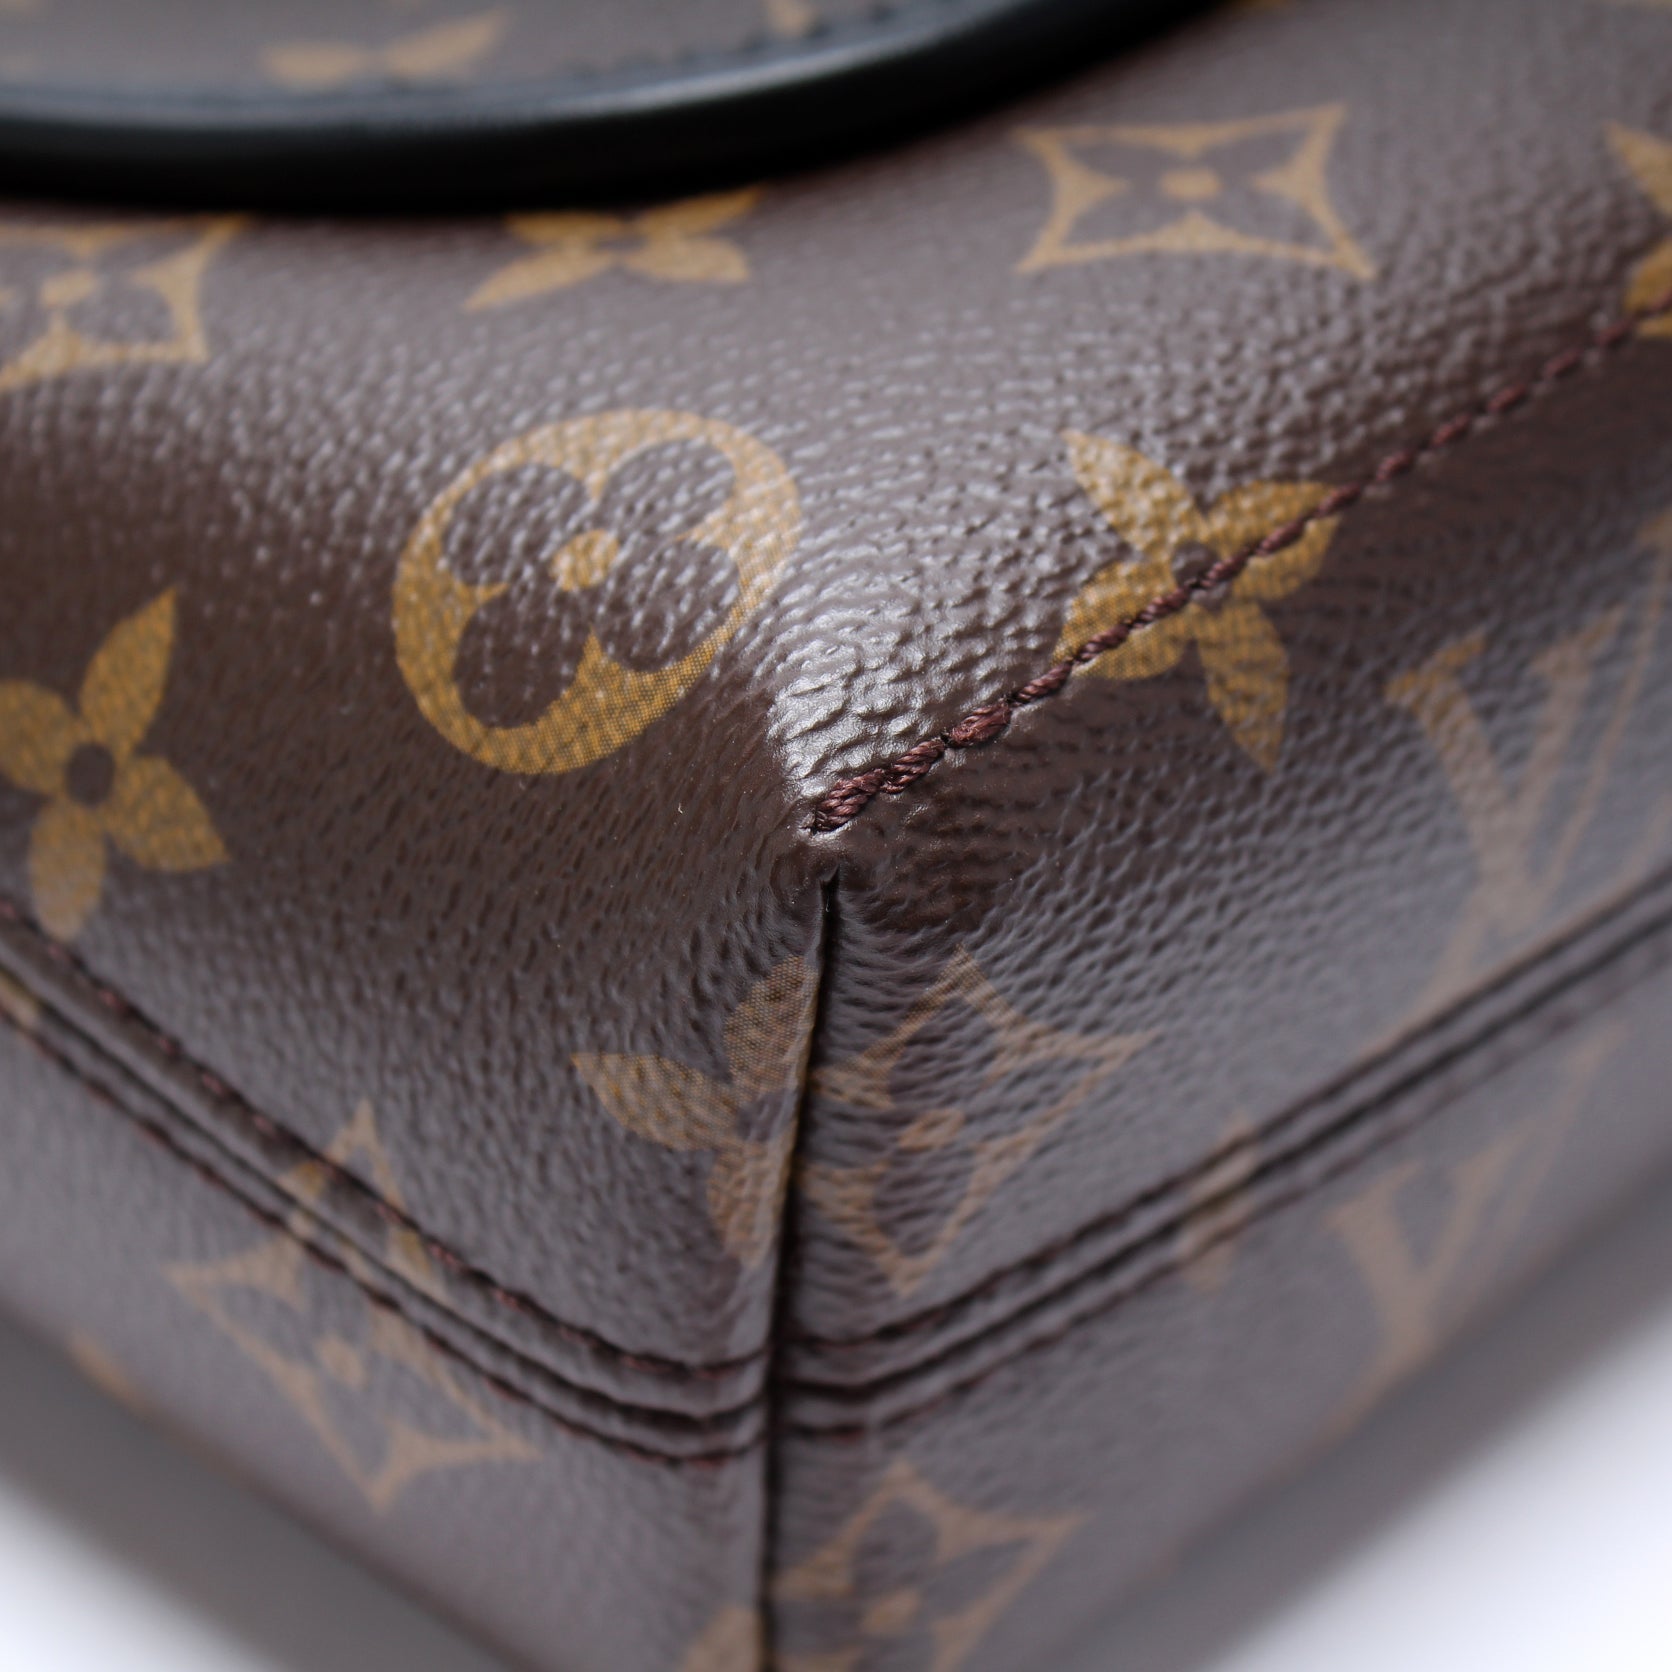 Louis Vuitton Magnetic Messenger Bag Macassar Monogram Canvas - ShopStyle